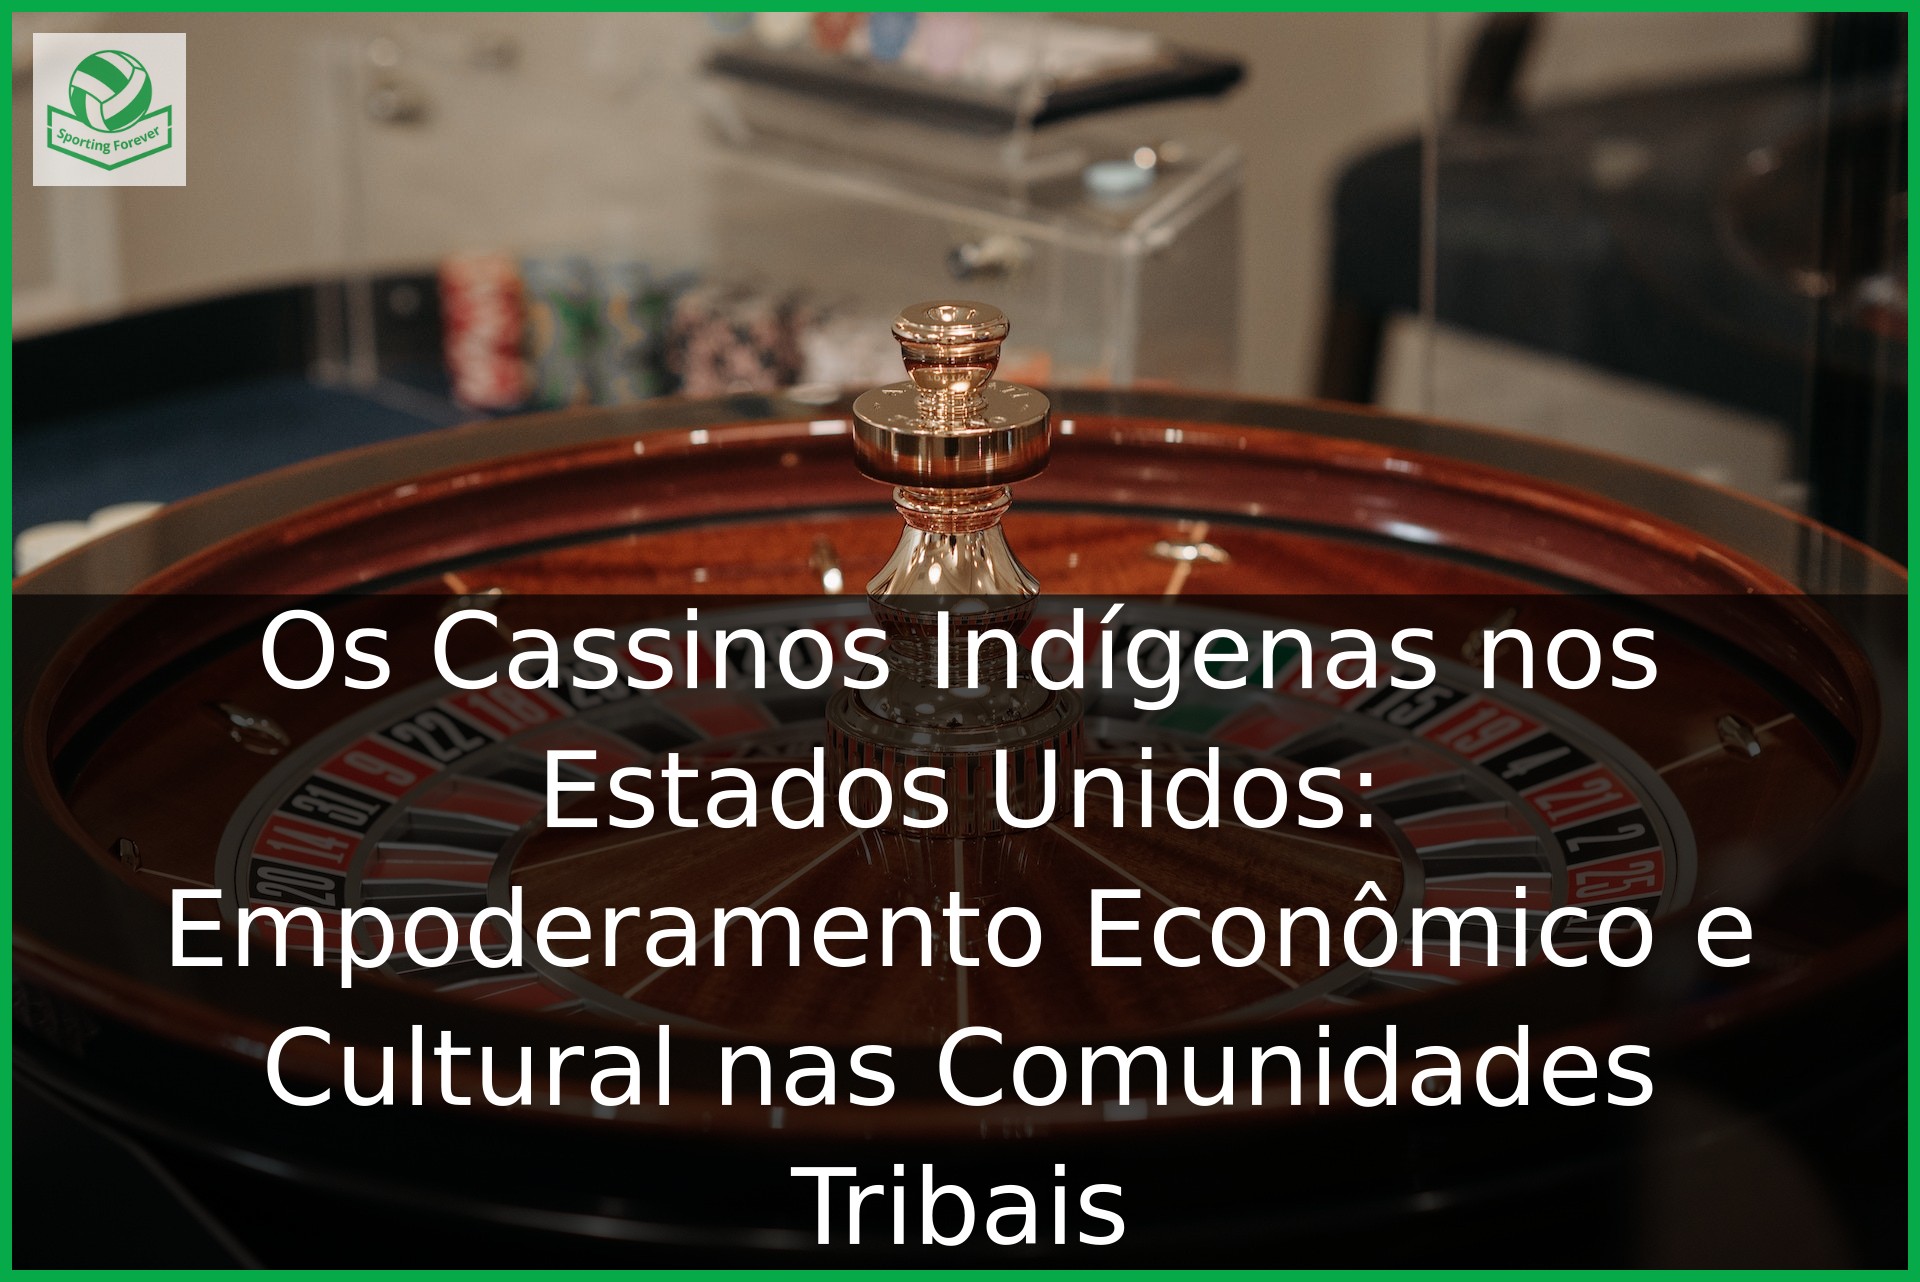 Os Cassinos Indígenas nos Estados Unidos: Empoderamento Econômico e Cultural nas Comunidades Tribais